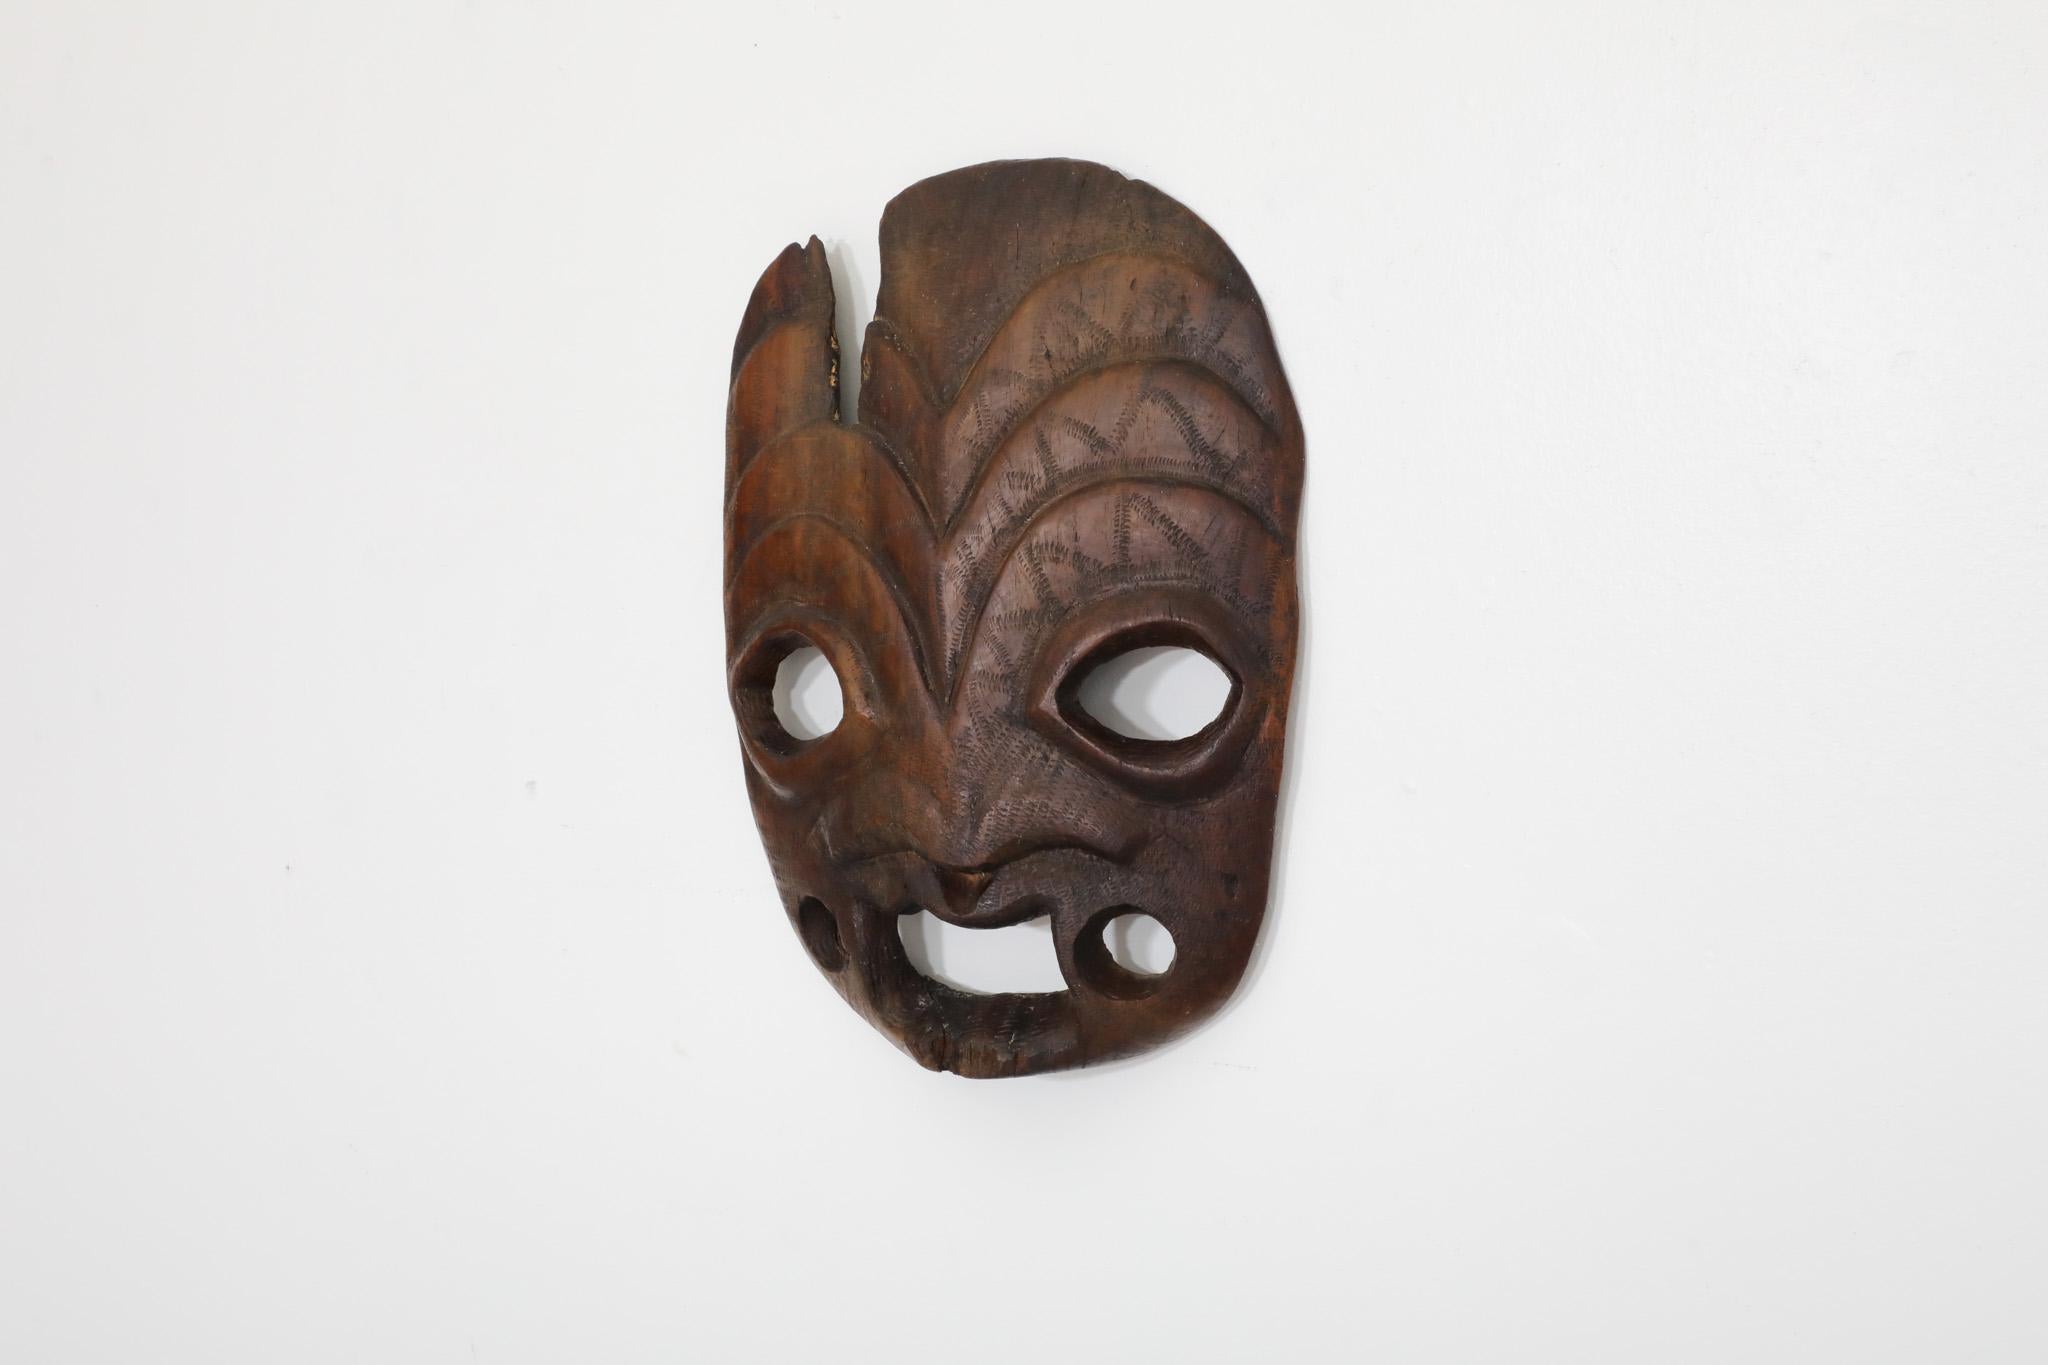 Masque tribal antique en chêne massif, probablement sculpté à la main par les Maoris. On ne sait pas grand-chose sur la provenance de cette pièce, mais elle n'en est pas moins époustouflante. En état original avec une usure visible correspondant à